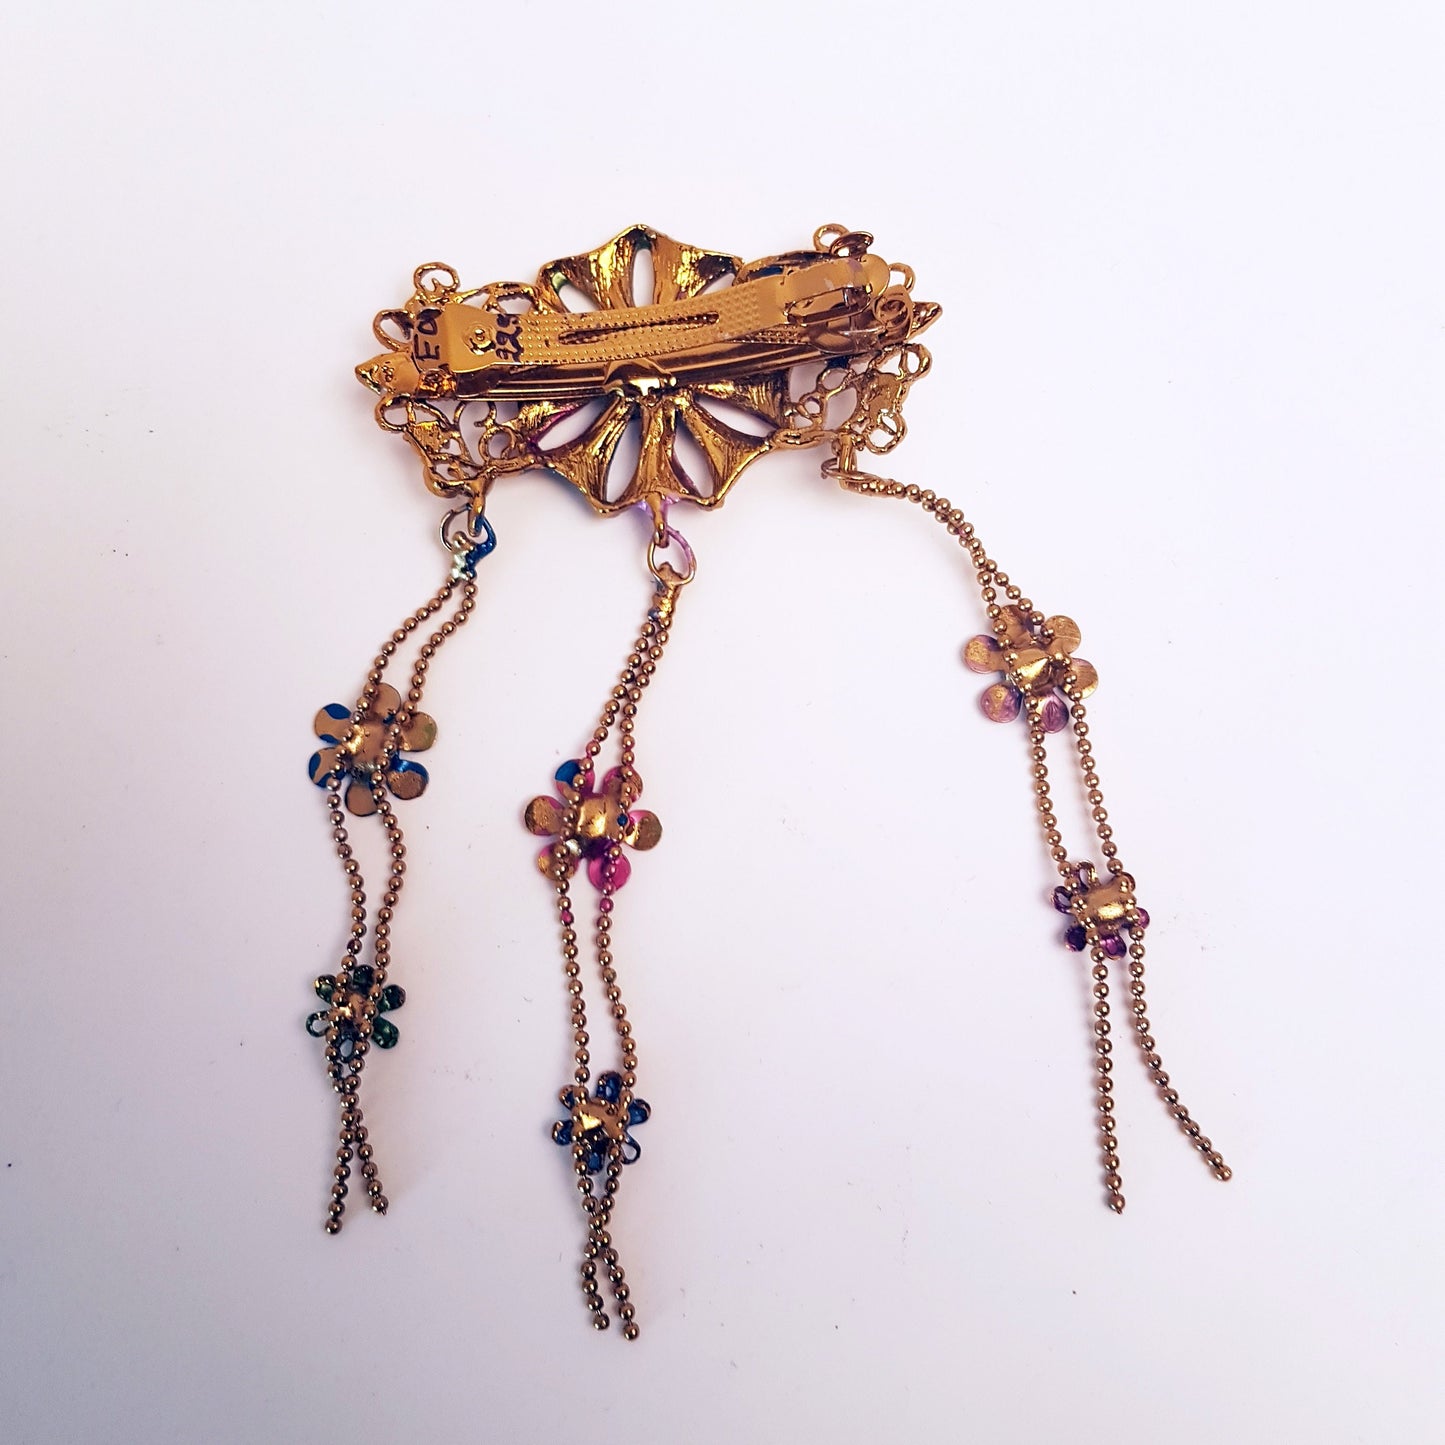 Barrette à cheveux vintage dans un motif floral médiéval. Bijoux de cheveux avec strass dans des tons doux de rose et de bleu. Détails en métal doré.